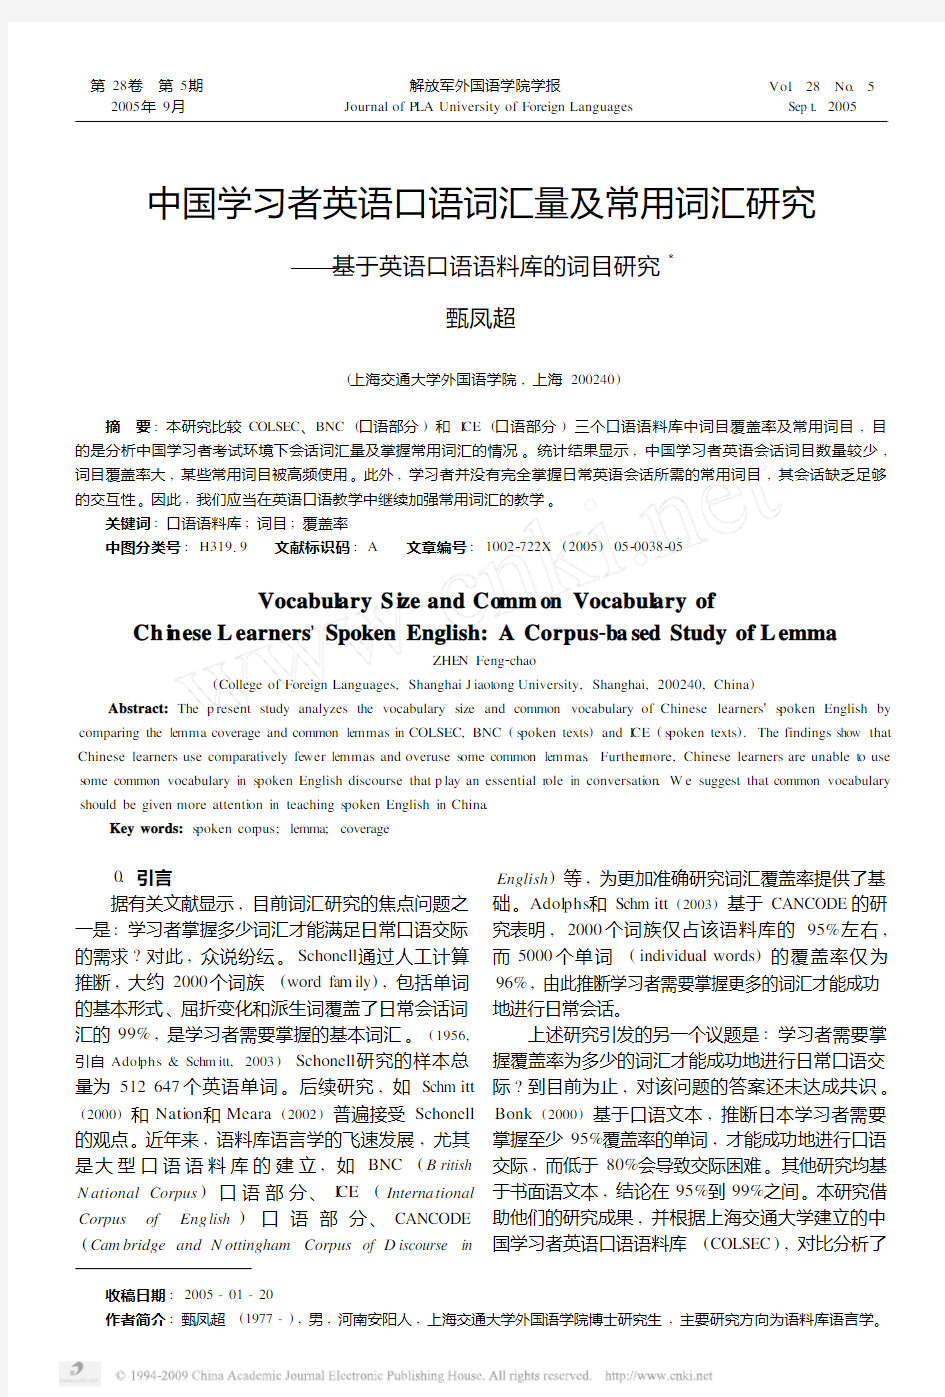 中国学习者英语口语词汇量及常用词汇研究_基于英语口语语料库的词目研究11111